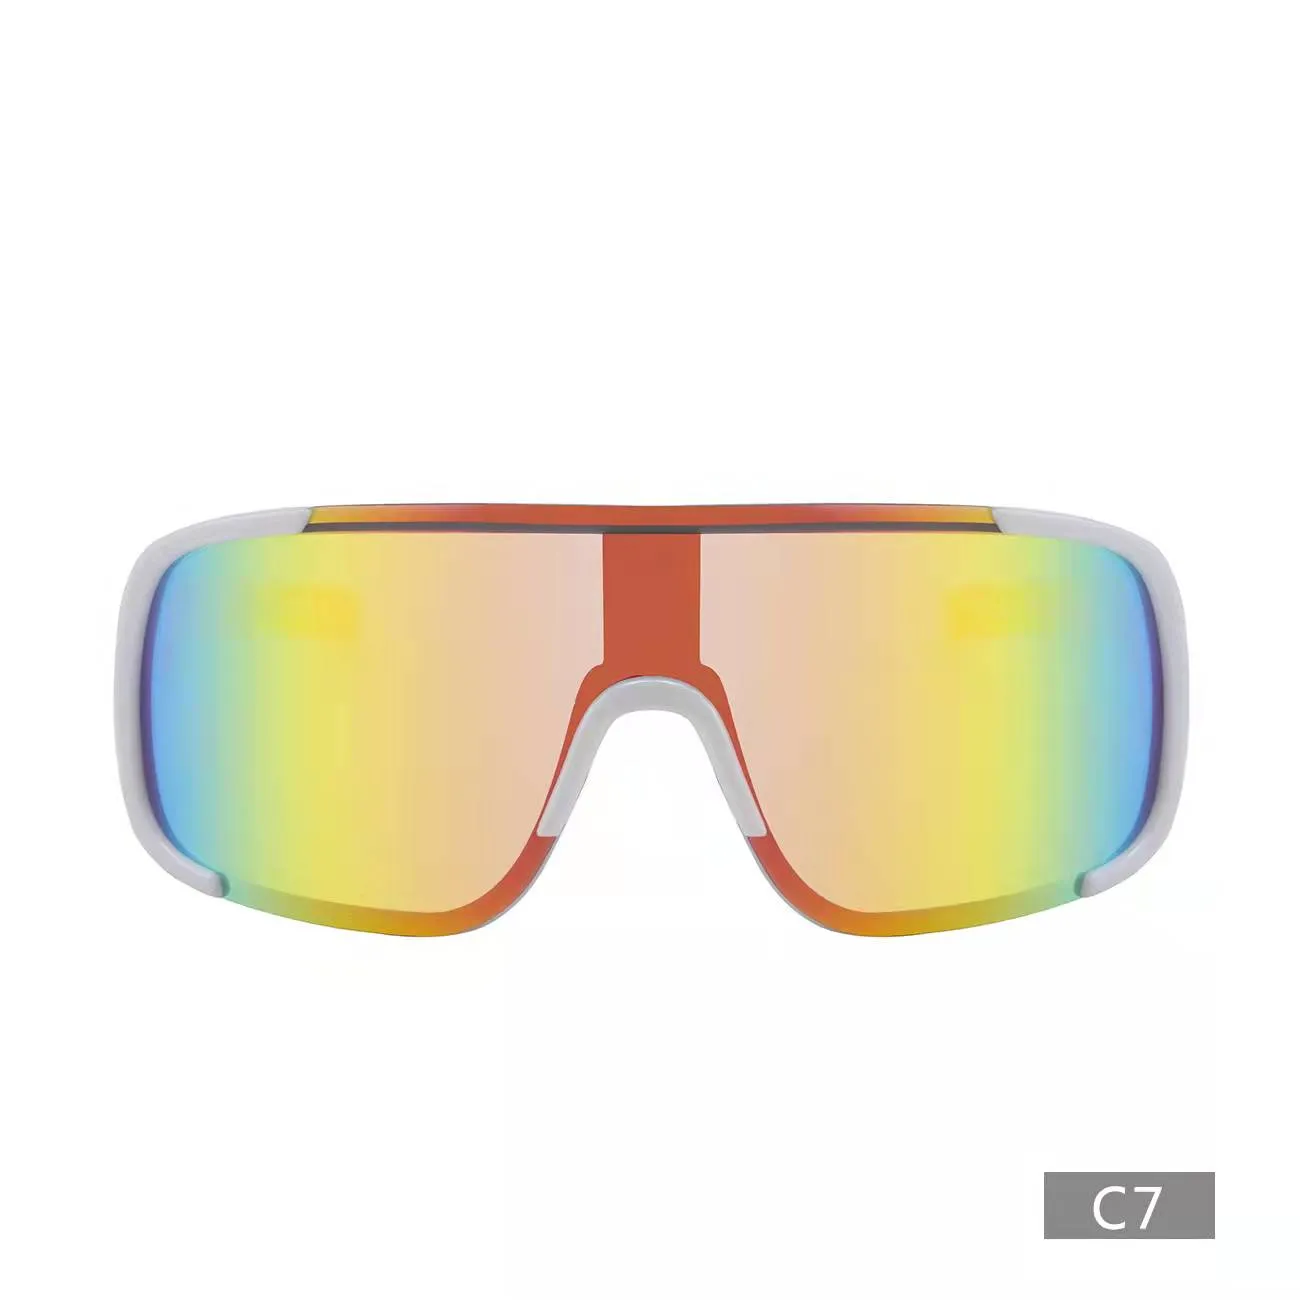 S926 модные солнцезащитные очки для мужчин и женщин, спортивные солнцезащитные очки для езды на велосипеде, велосипедные очки 178V